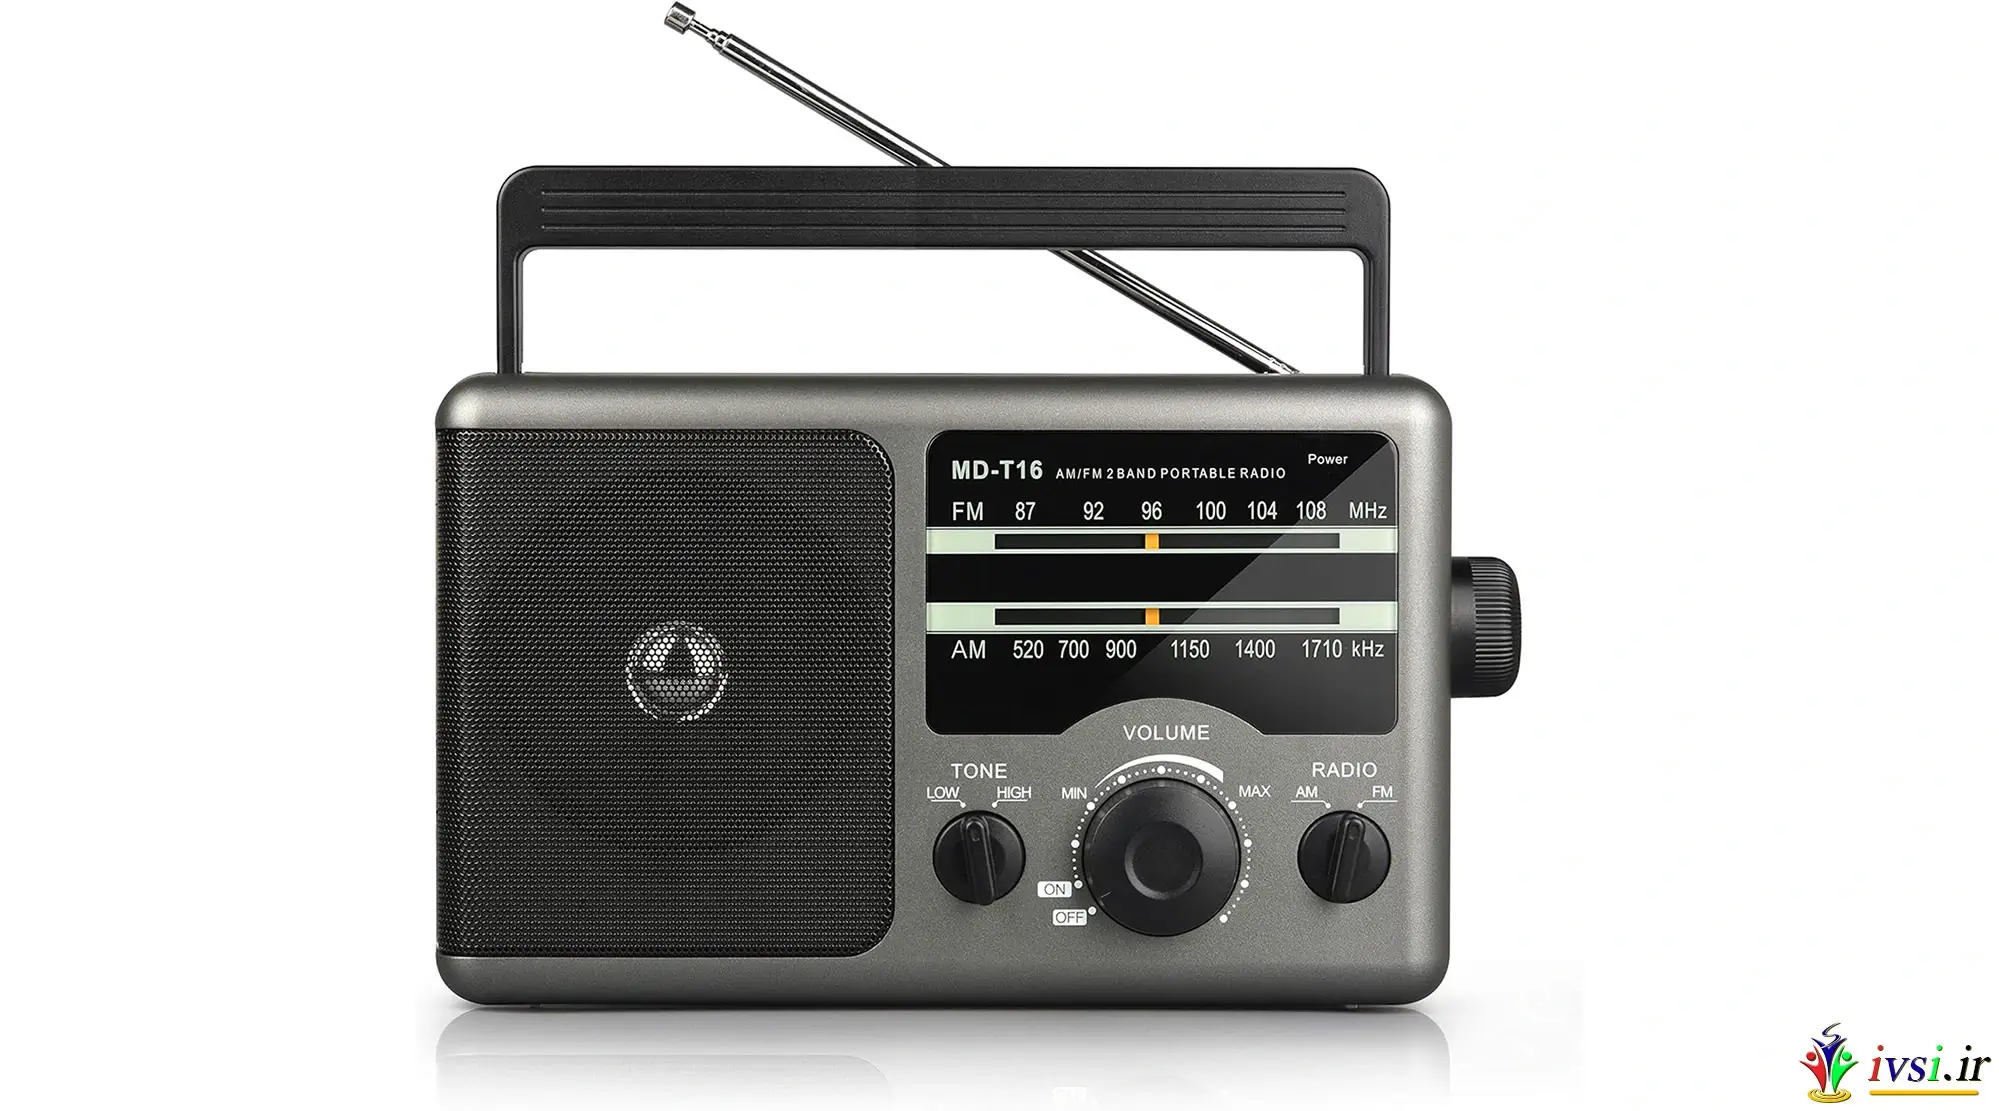 رادیو ترانزیستور رادیویی قابل حمل Greadio AM FM با جک هدفون 3.5 میلی متری، حالت صدای کم صدا، بلندگوی بزرگ